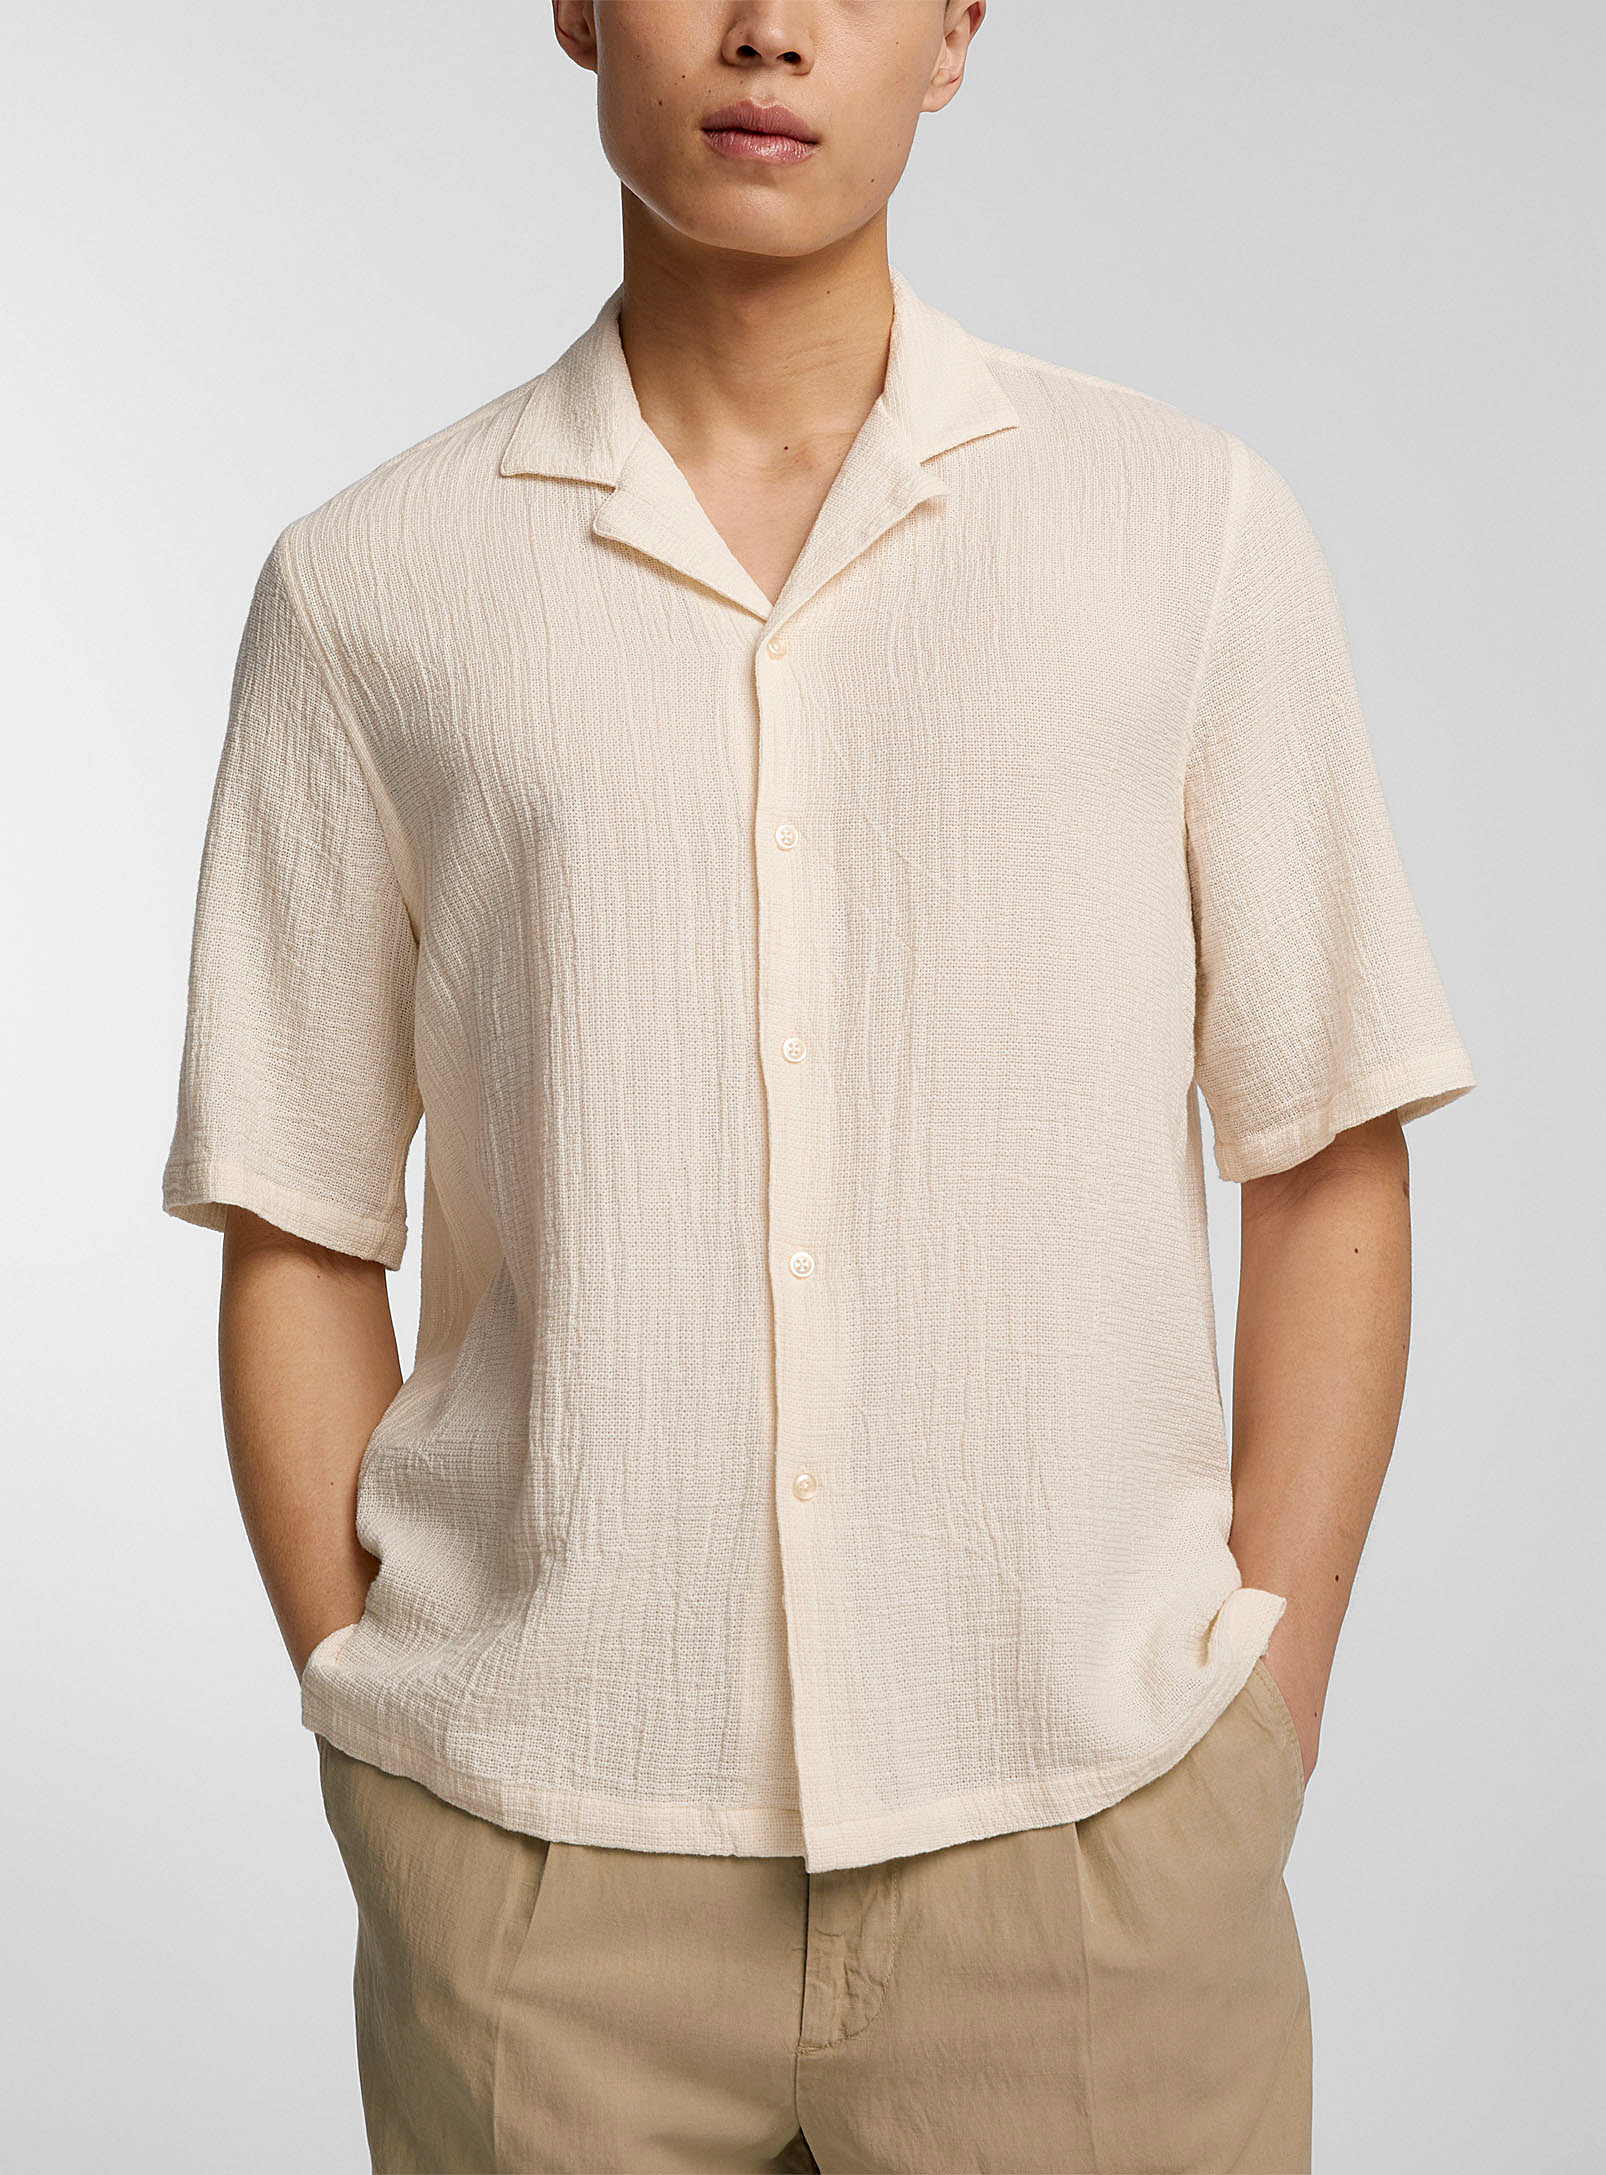 Officine Generale Eren Textured Cotton Shirt In Ivory White